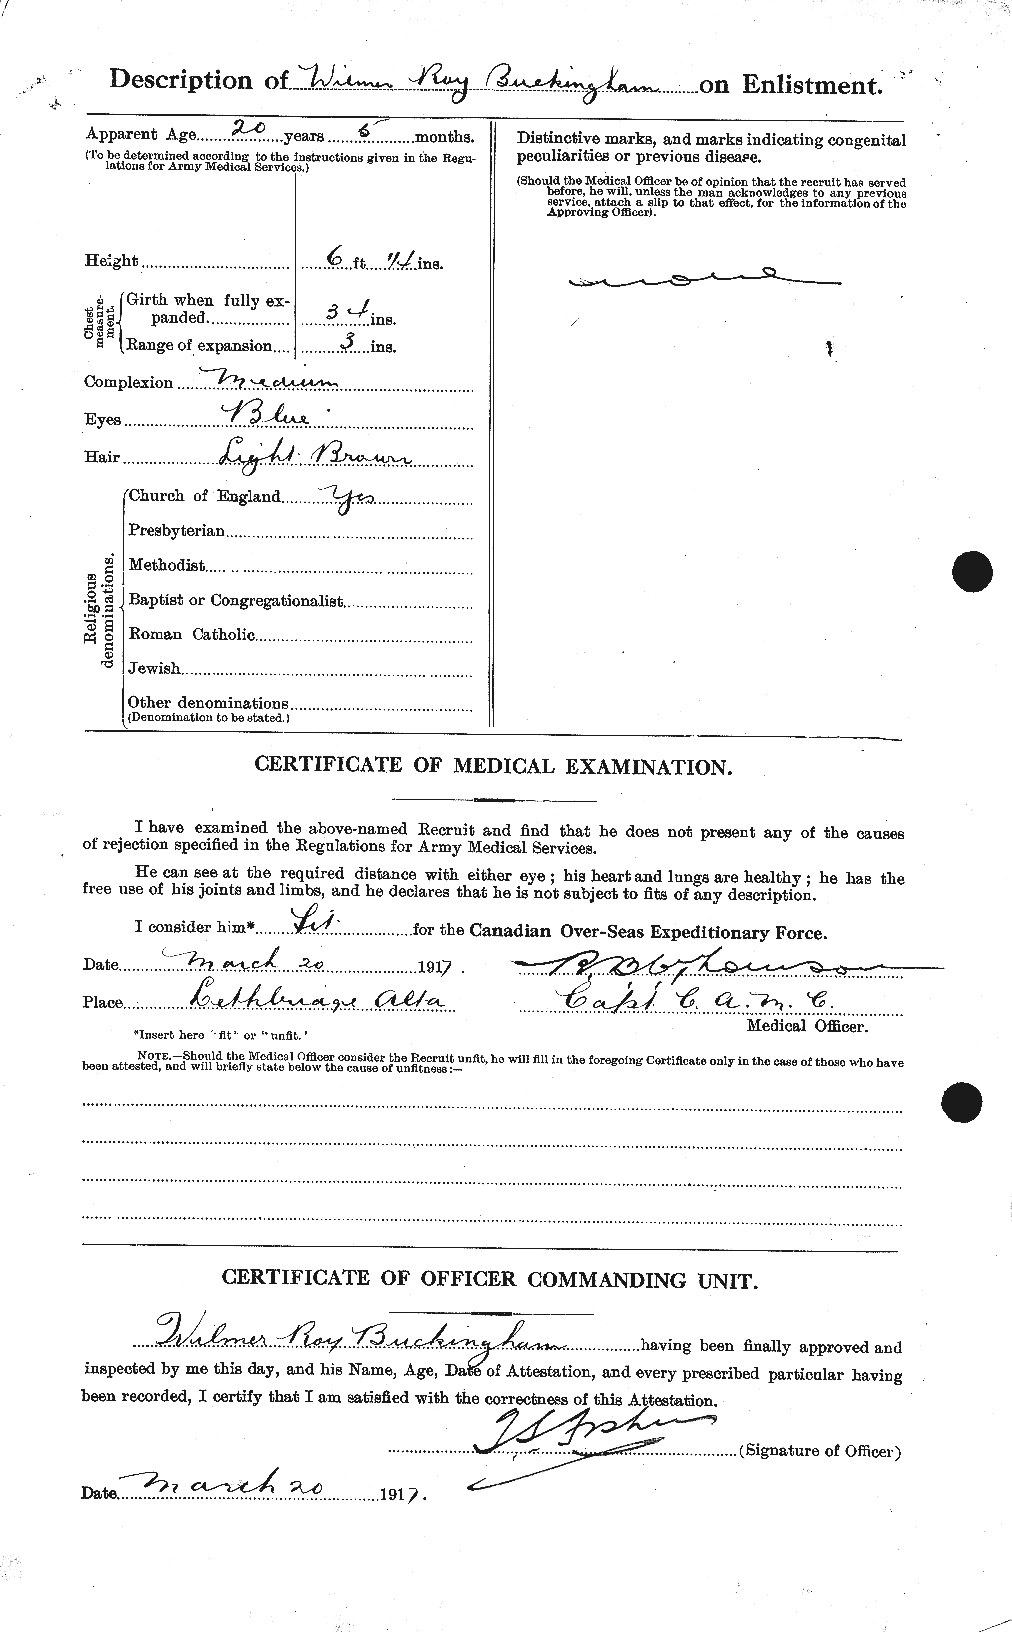 Dossiers du Personnel de la Première Guerre mondiale - CEC 269476b